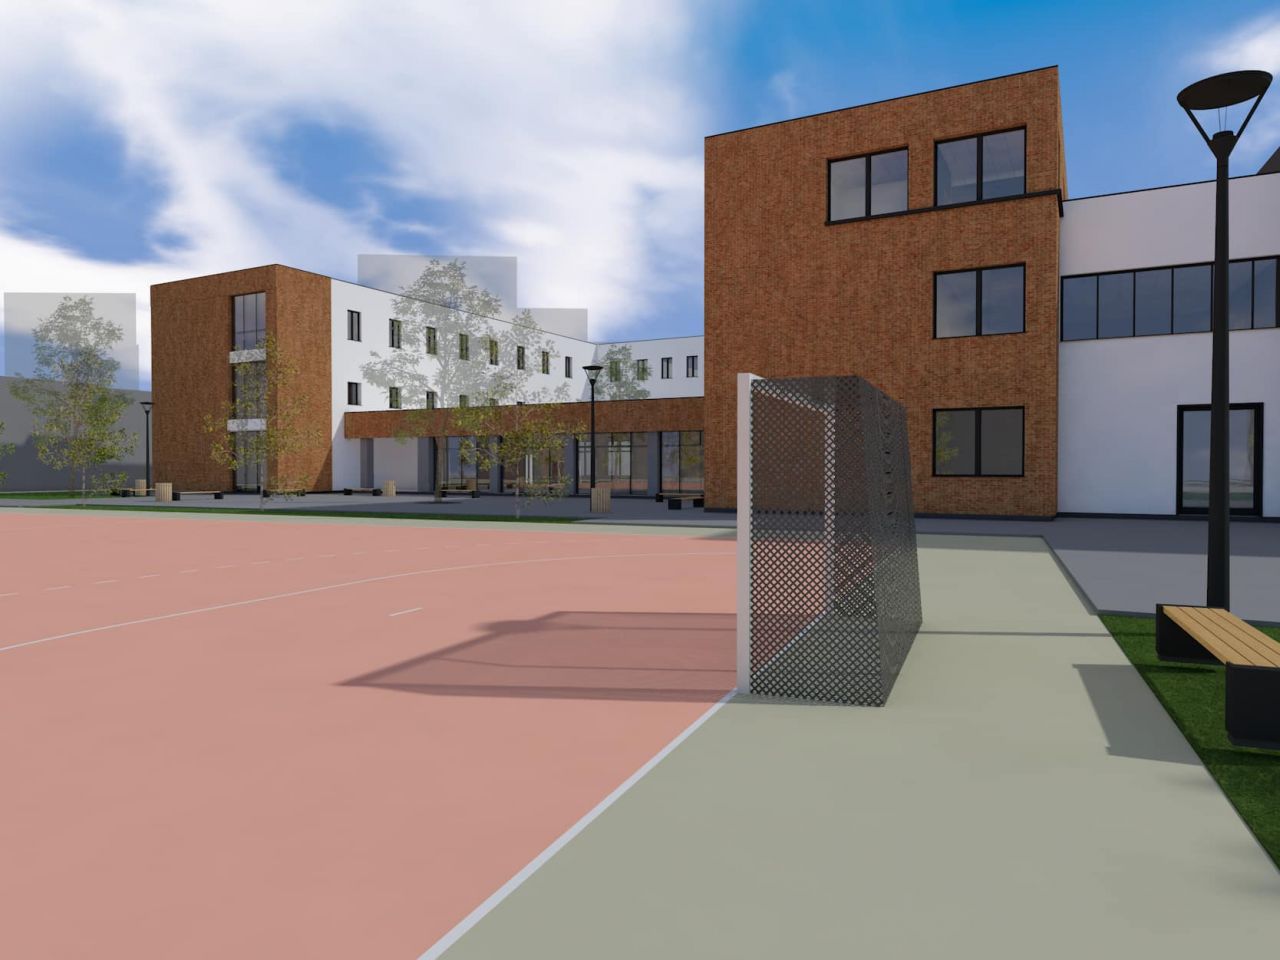 Școala „Nicolae Iorga” intră în modernizare. Elevii vor avea sală de sport de mărimea unui teren de handbal.